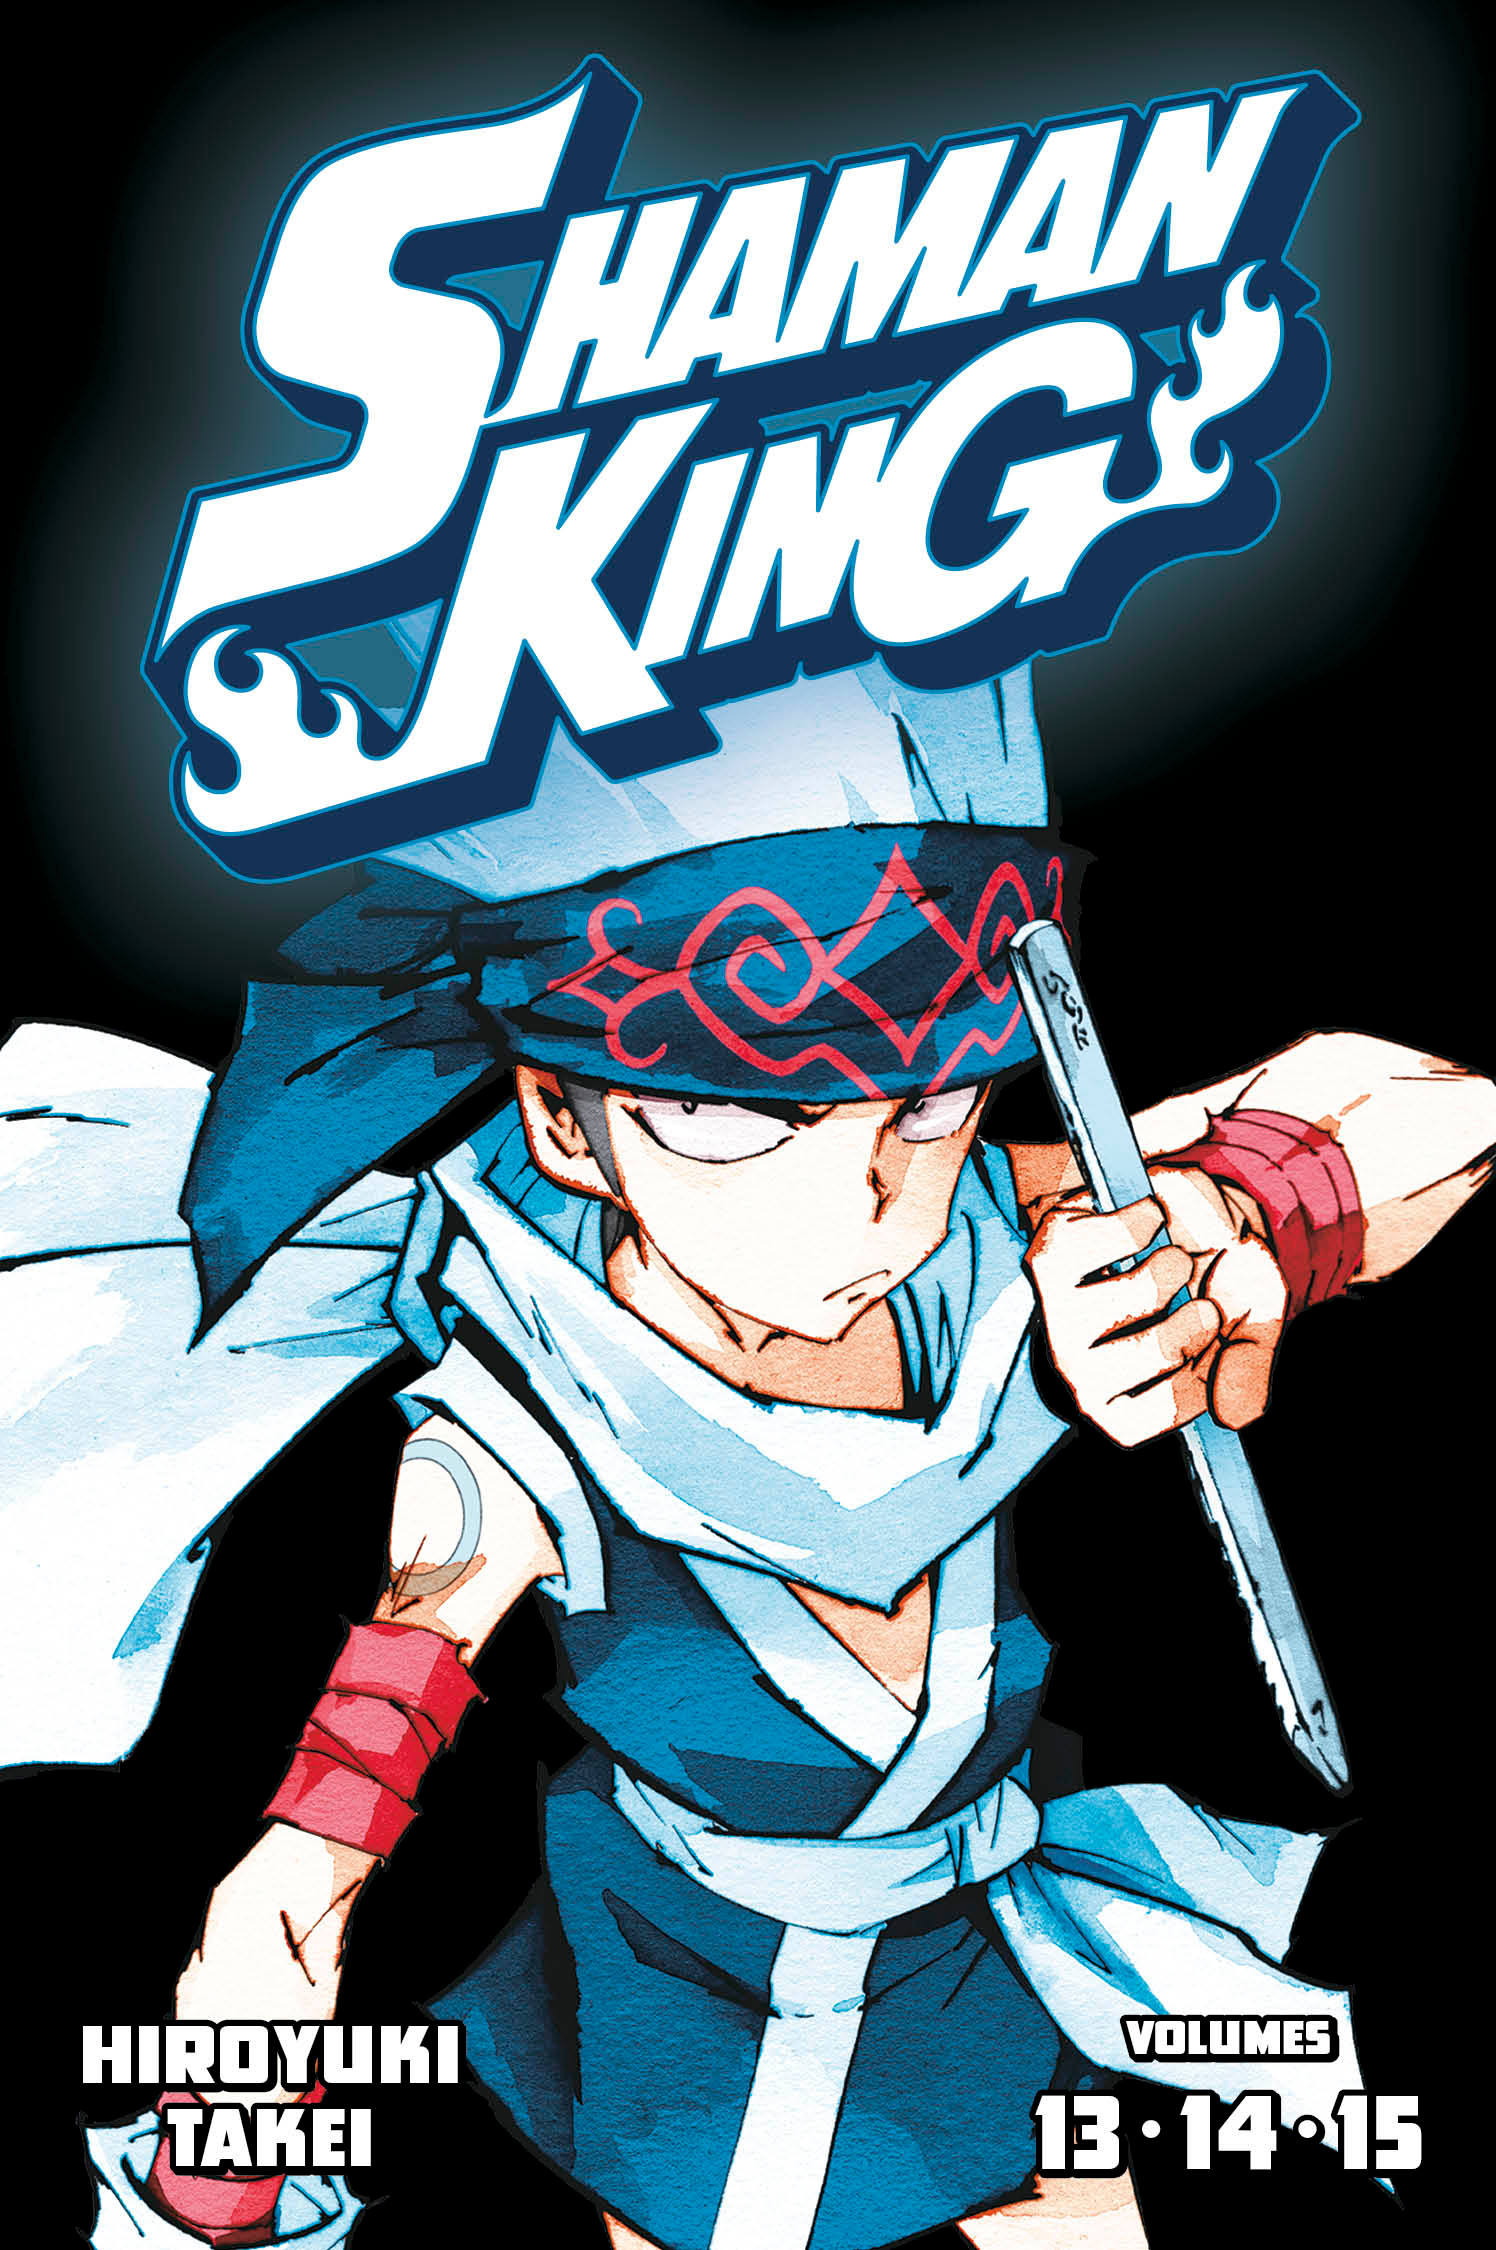 Shaman King Omnibus Manga Volume 5